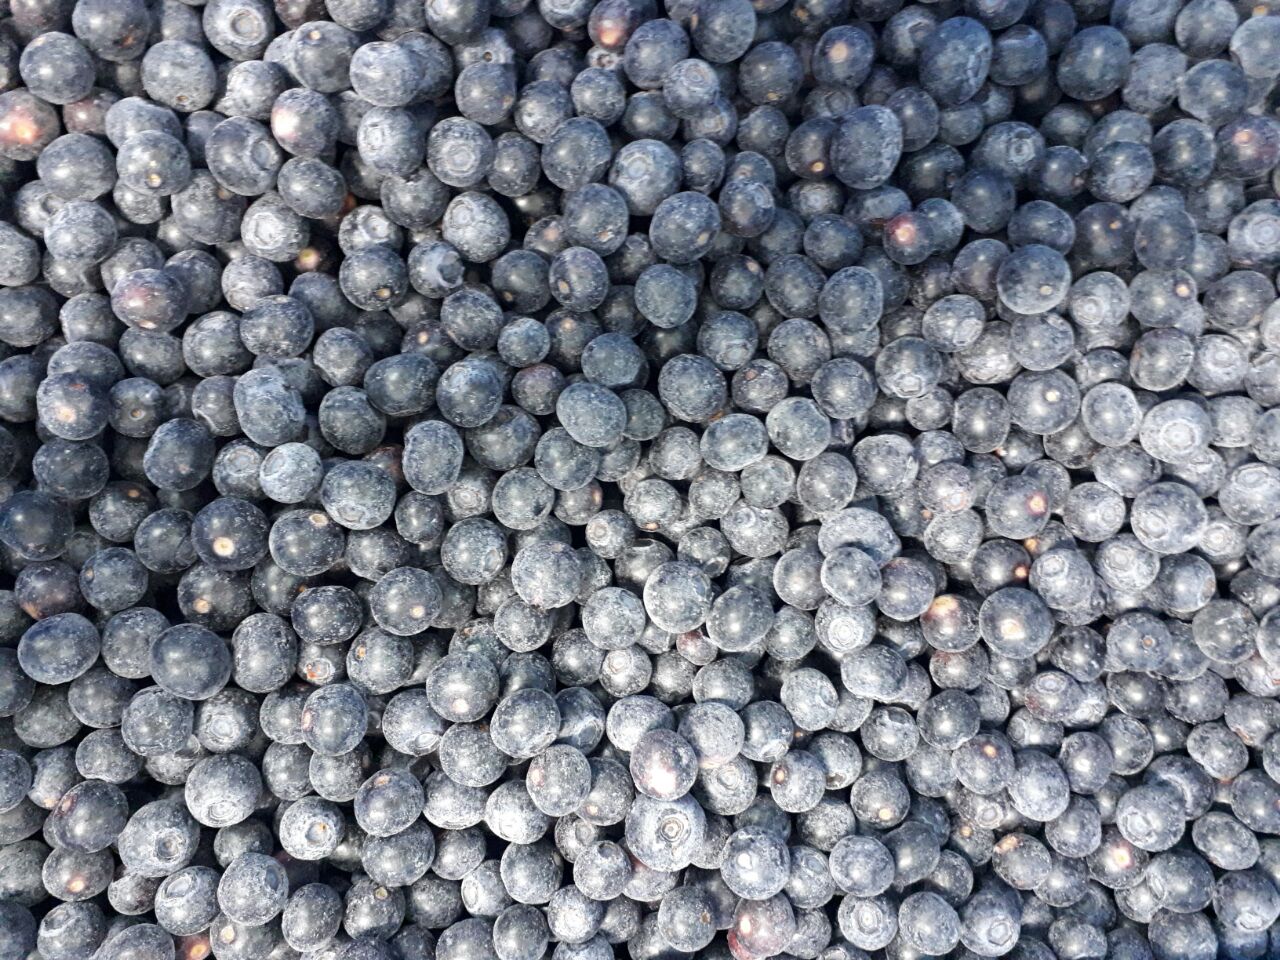 新鲜冷冻蓝莓营养